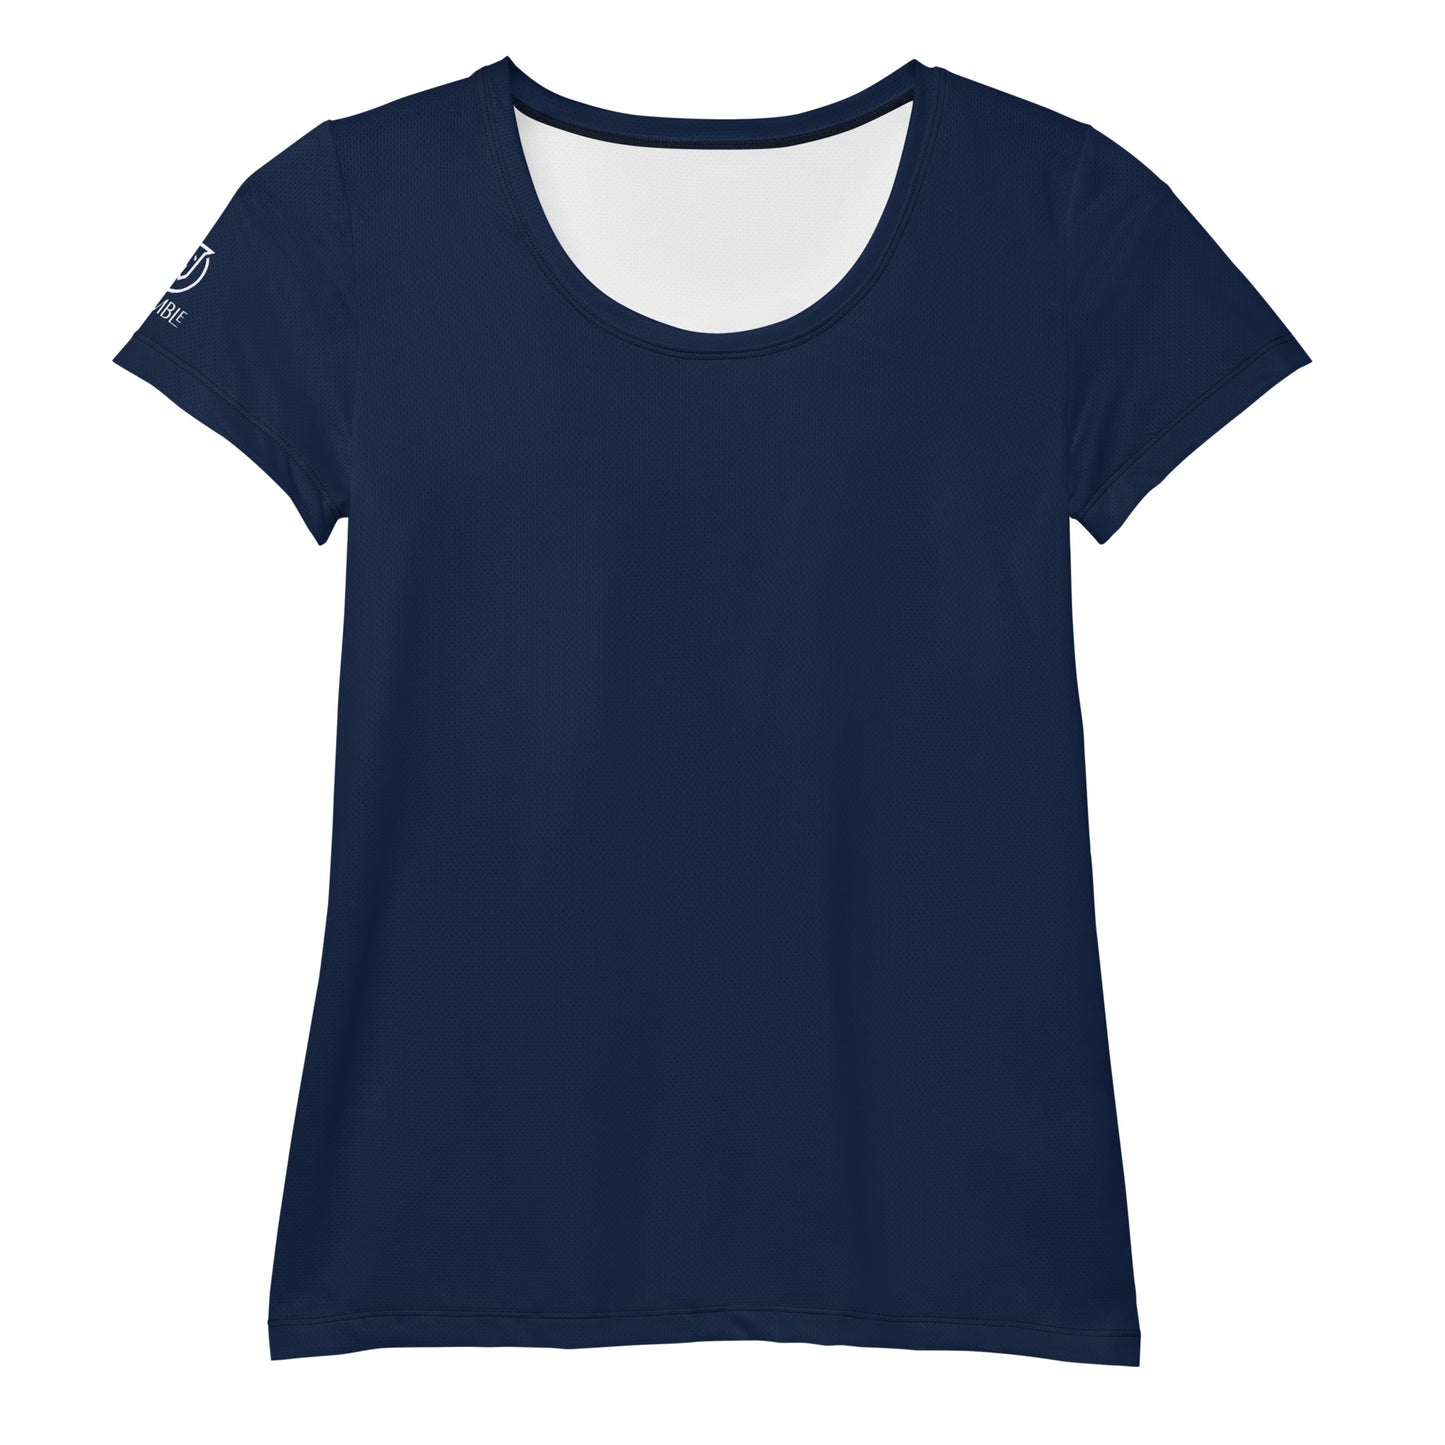 Humble Sportswear, mesh t-shirts, mesh tops for women, women’s active t-shirts